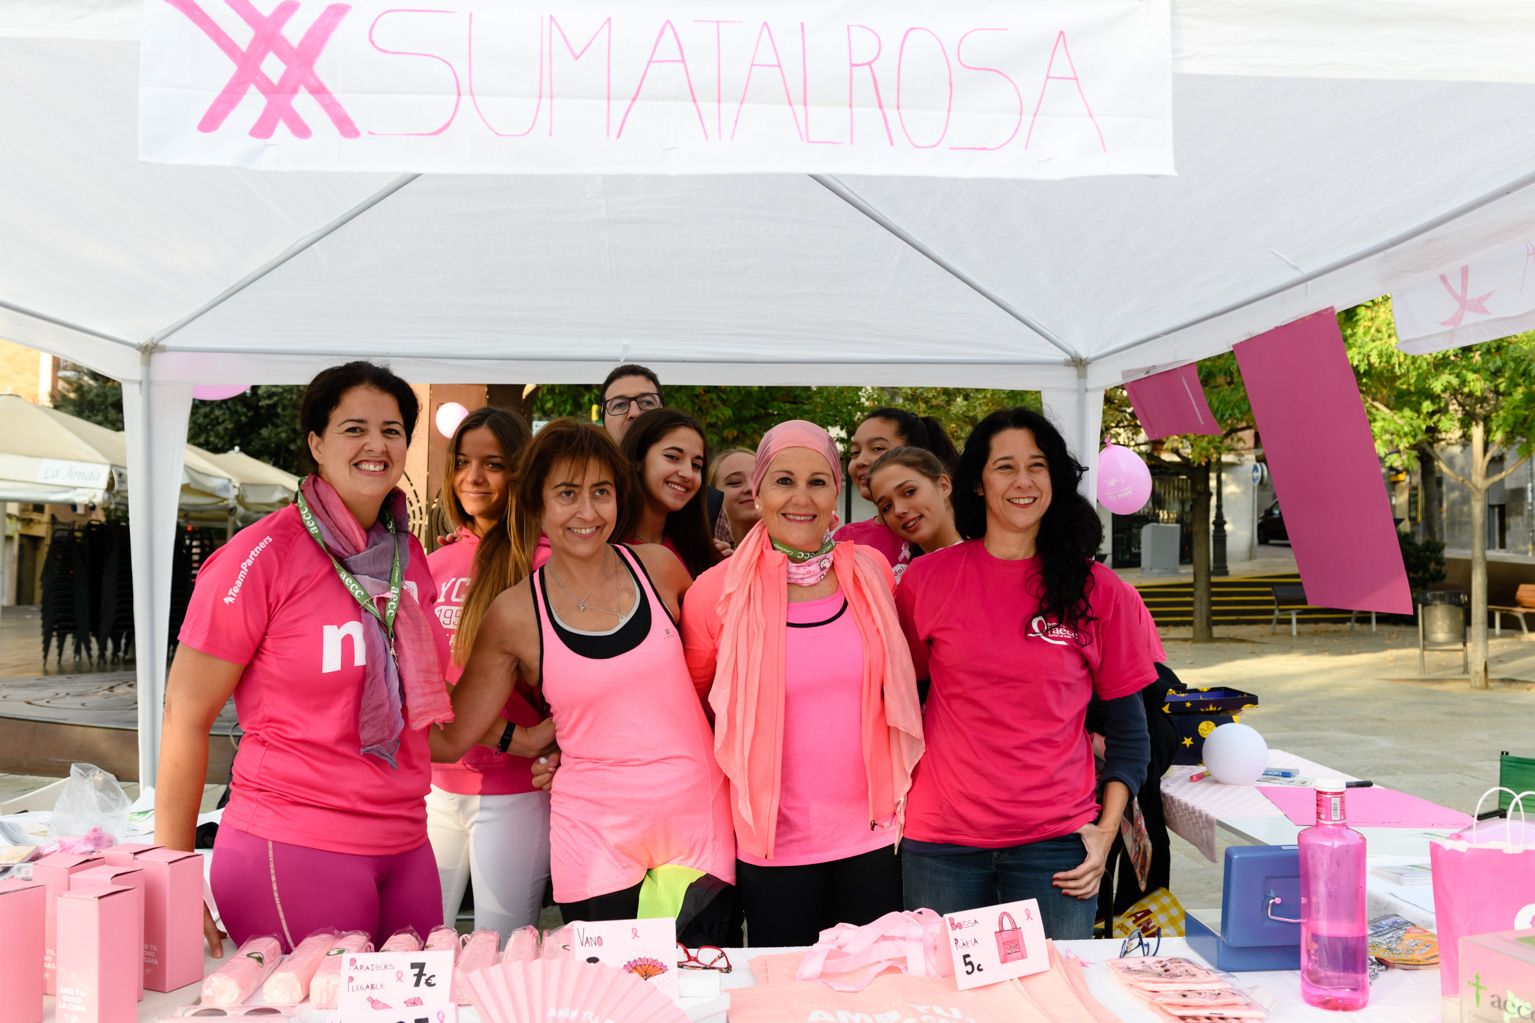 Dia del cáncer de mama caminada solidaria. Foto: Miguel López Mallach